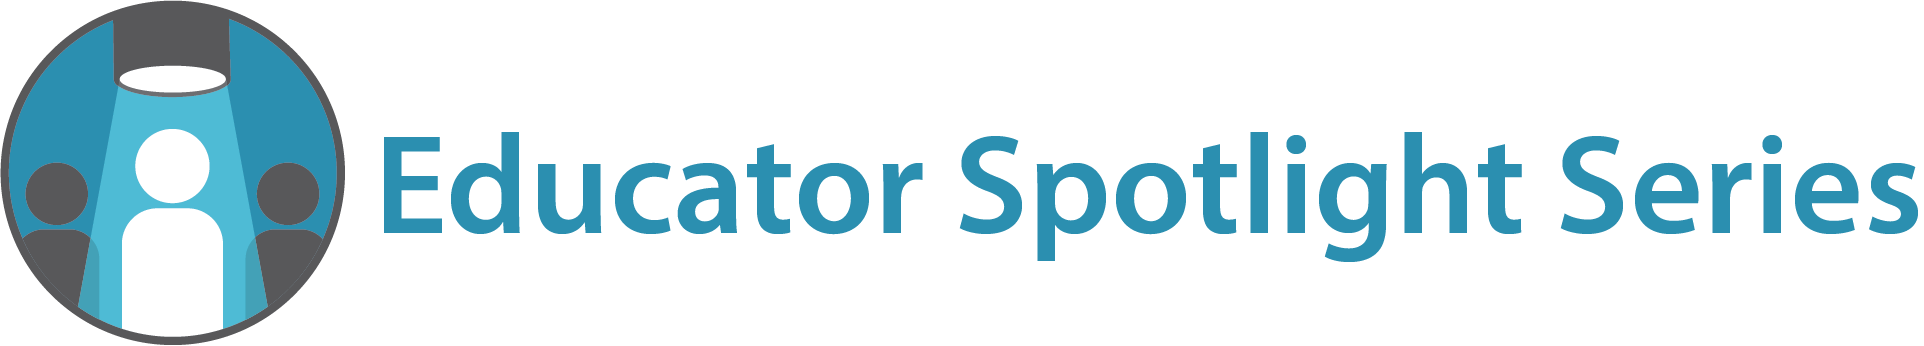 Educator Spotlight Series Logo